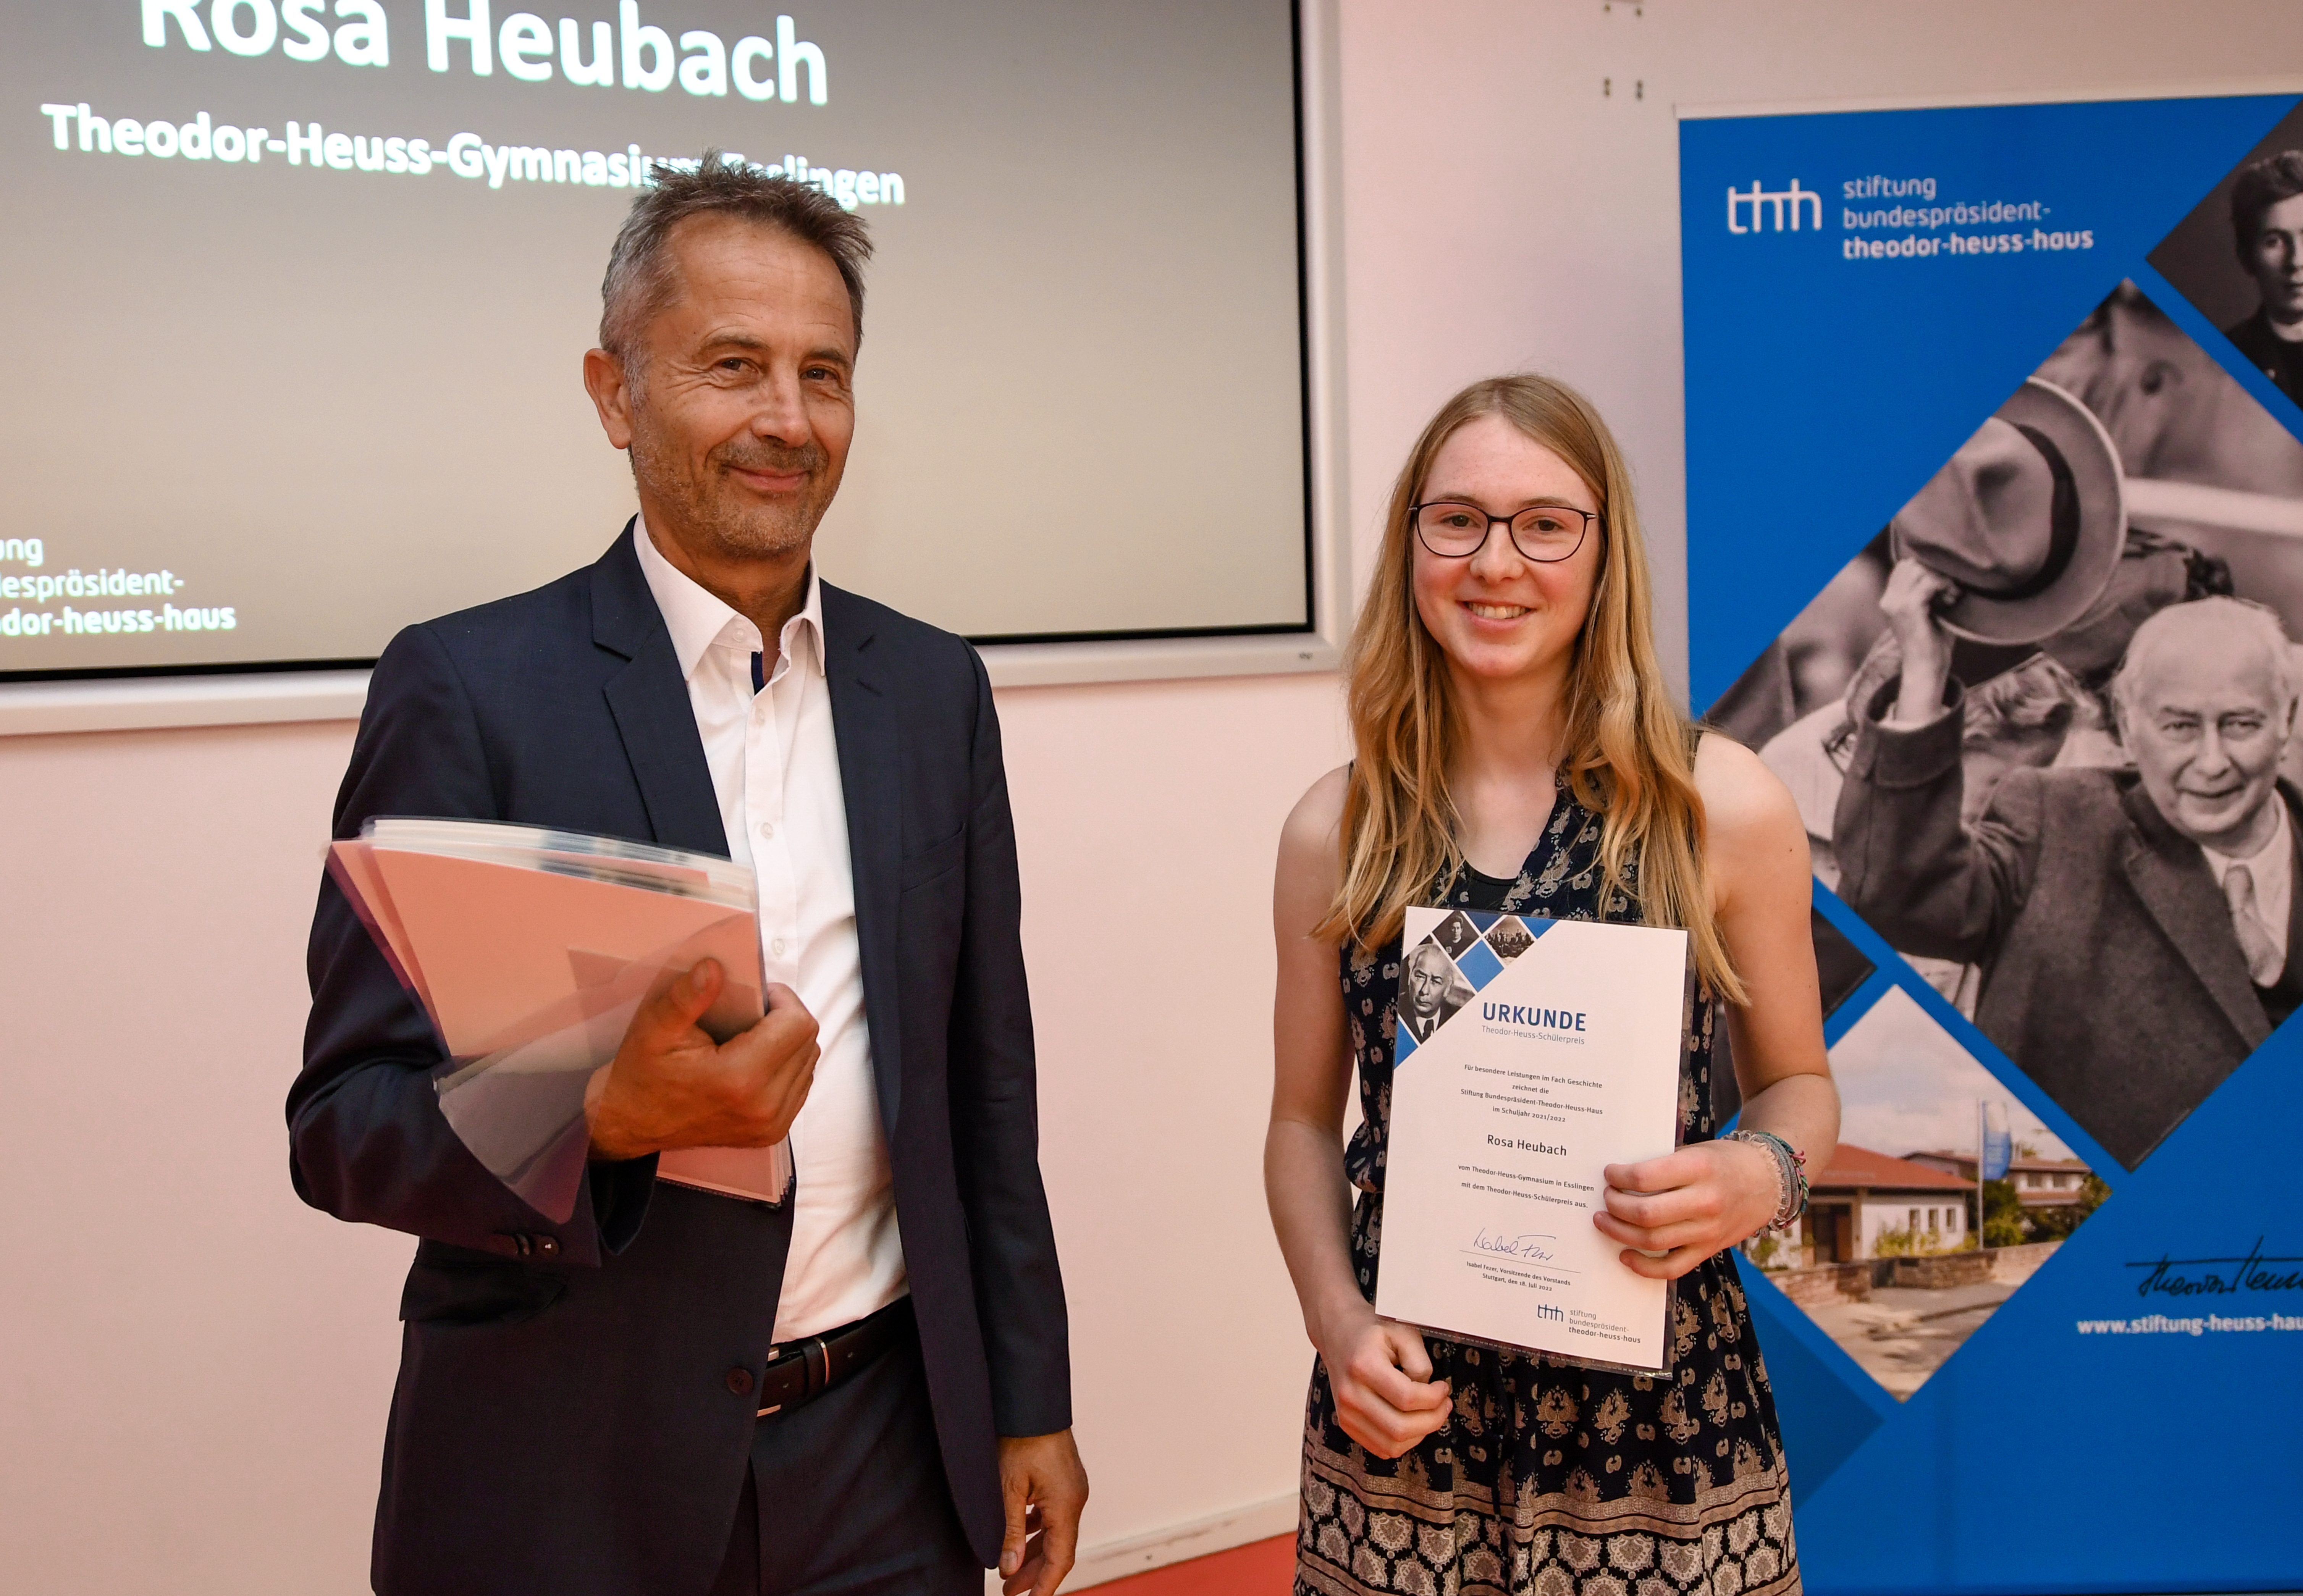 Mädchen mit Urkunde neben dem Geschäftsführer der Stiftung Bundespräsident-Theodor-Heuss-Haus